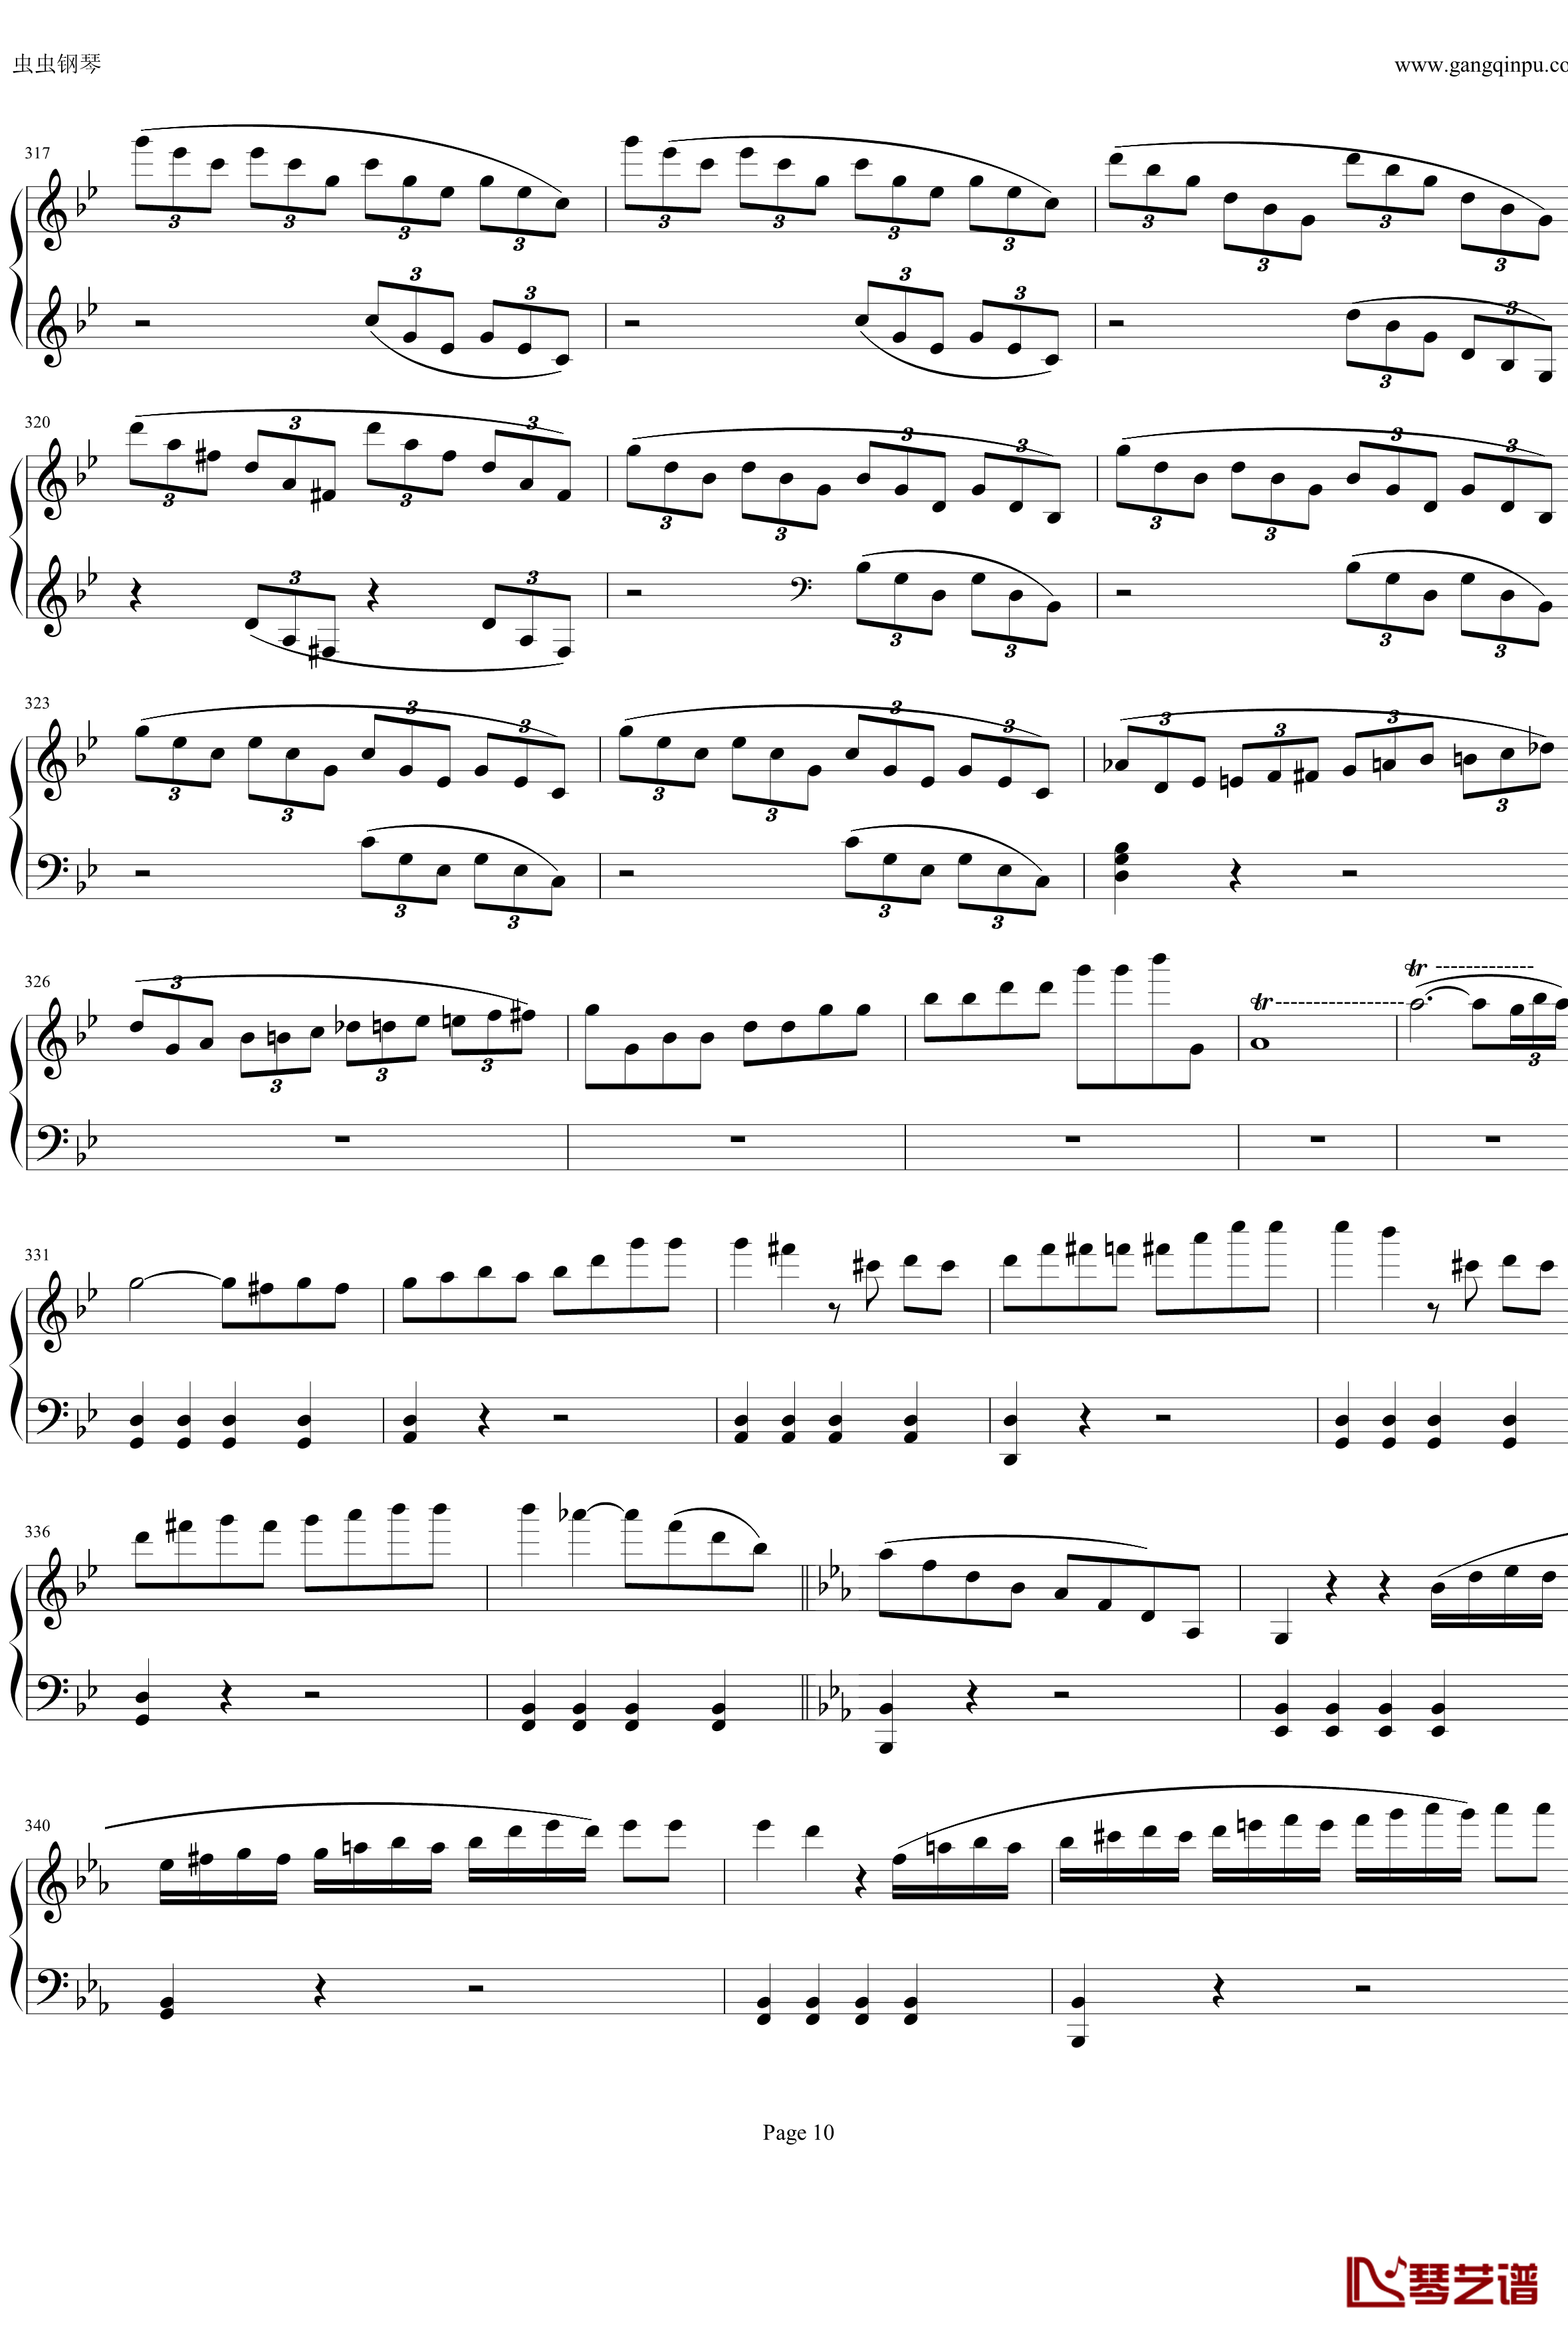 钢琴协奏曲Op61第一乐章钢琴谱-贝多芬-beethoven10